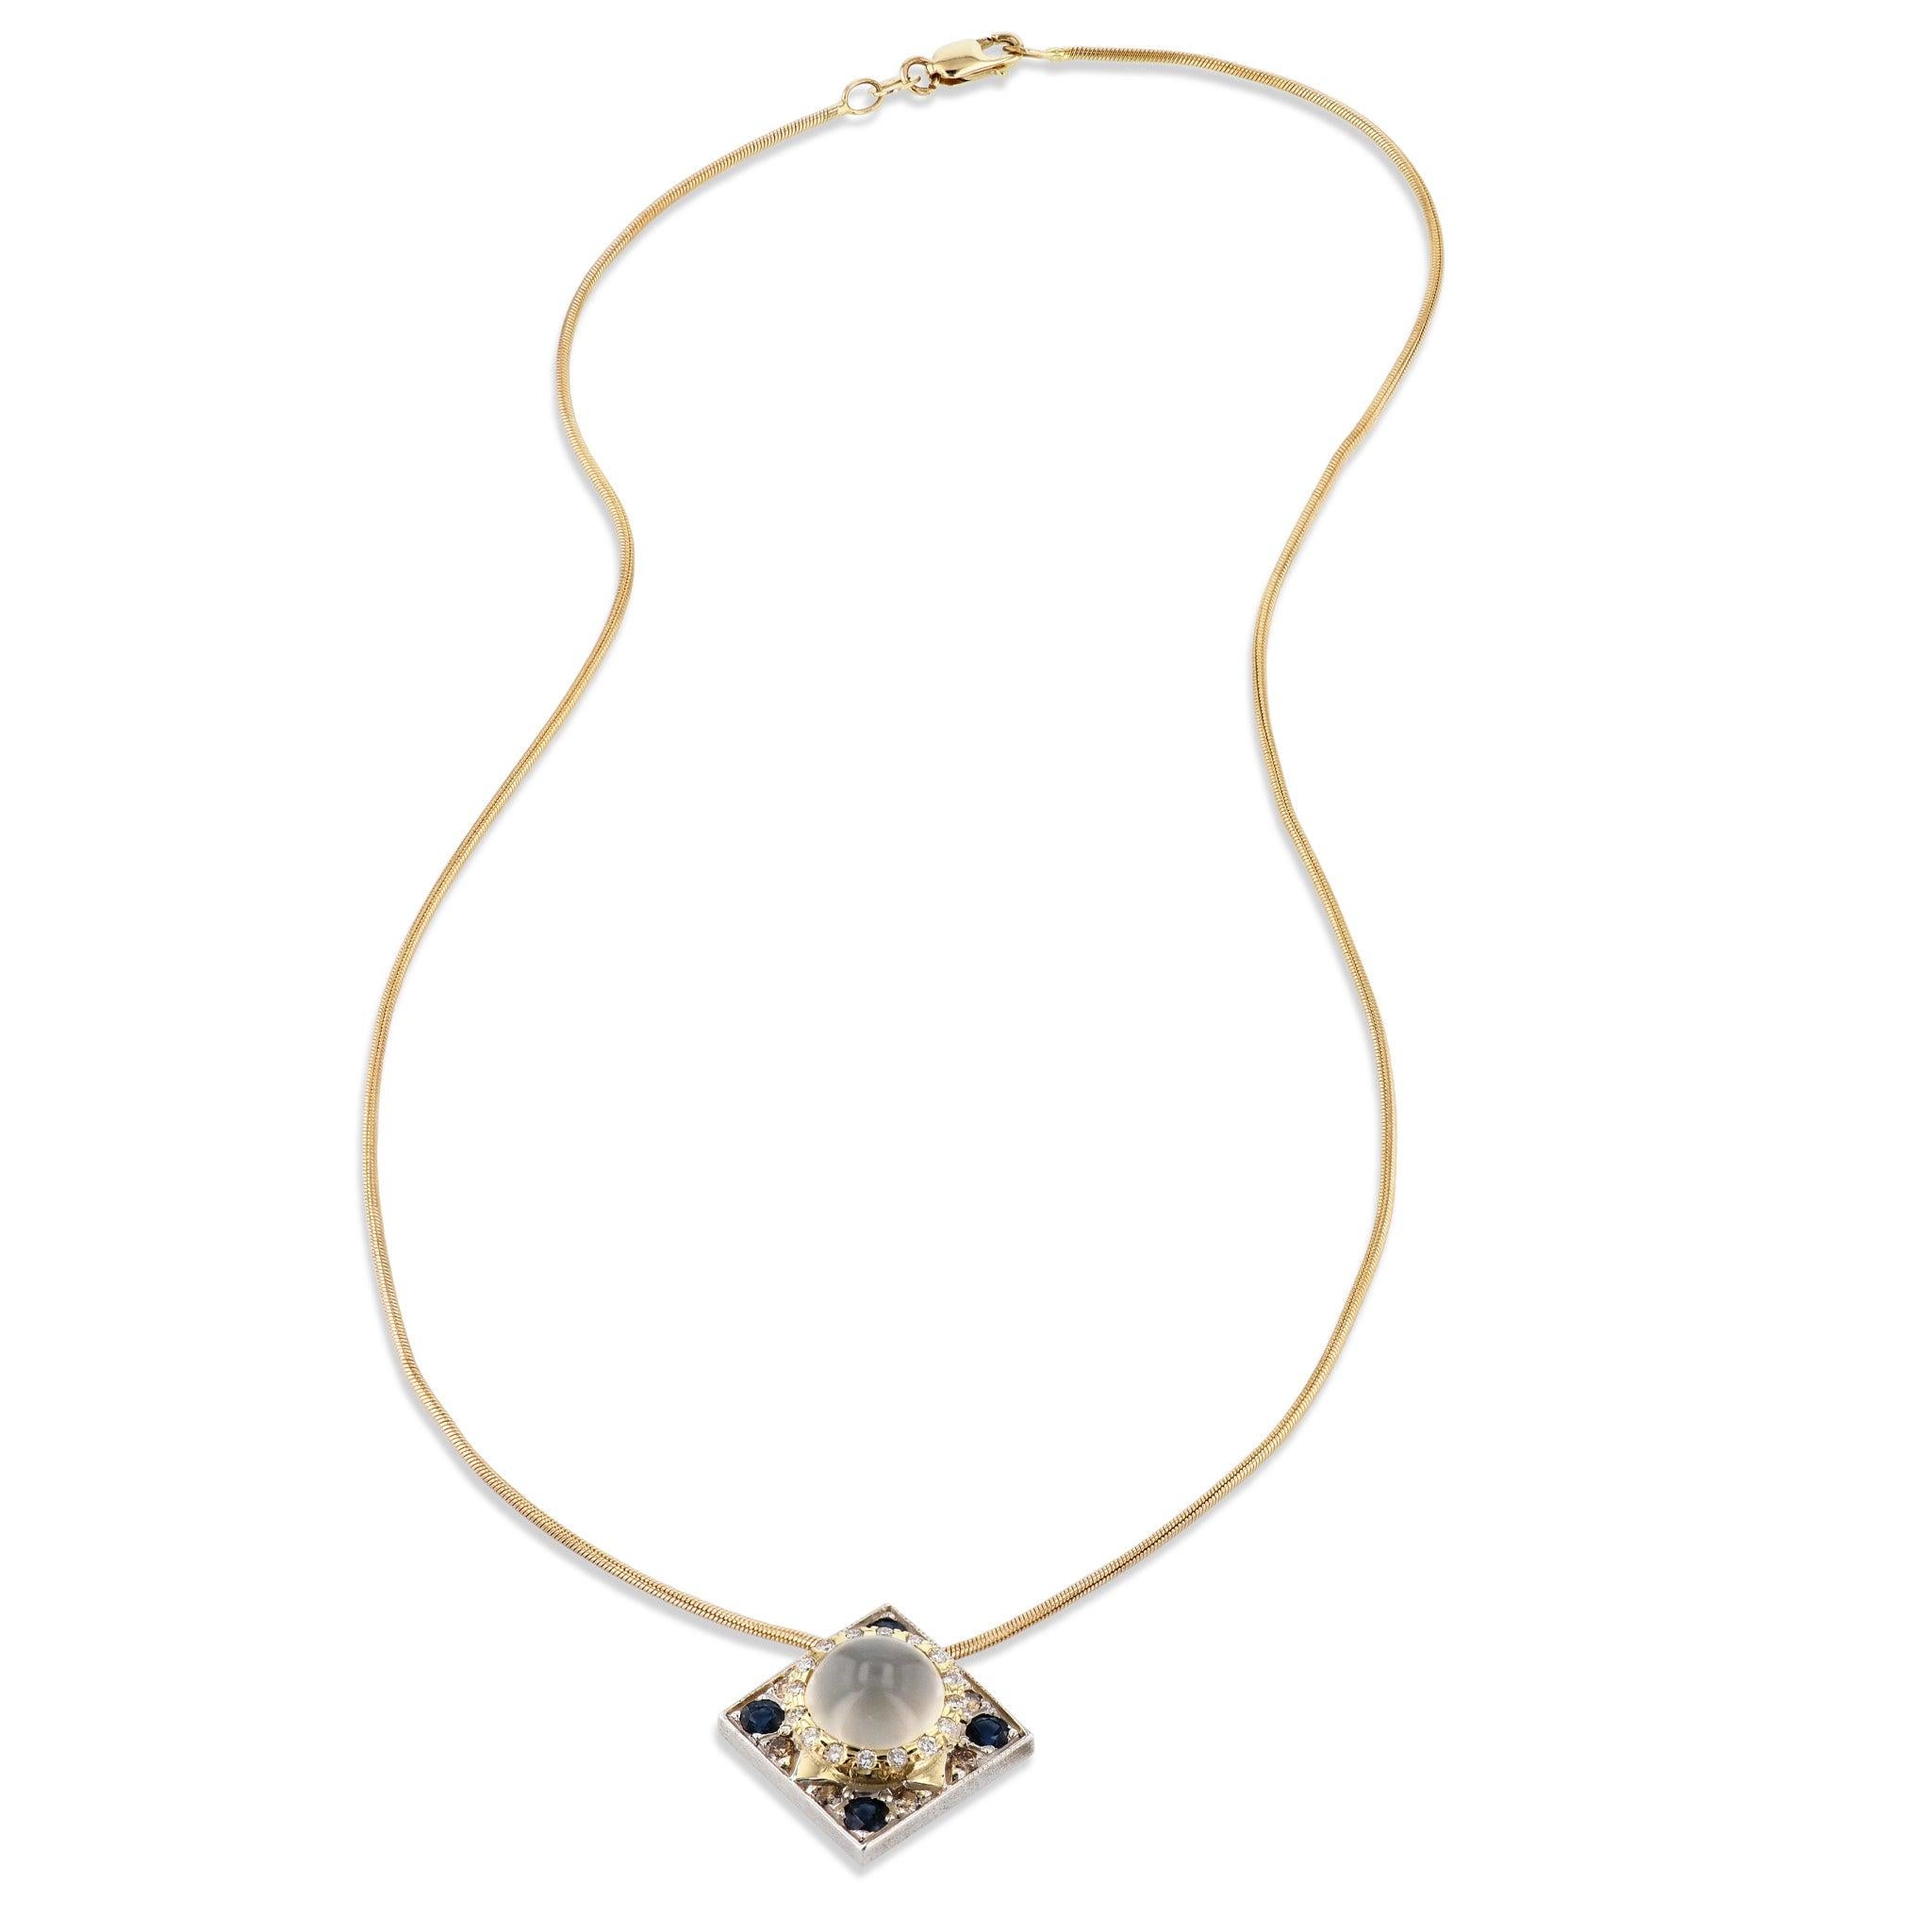 Die Mondstein-Saphir-Diamant-Anhänger-Halskette ist ein wahres Schmuckstück, das Sie verzaubern wird. Dieses wunderschöne Schmuckstück besteht aus einem Mondstein in der Mitte, 16 funkelnden runden Diamanten im Brillantschliff, 8